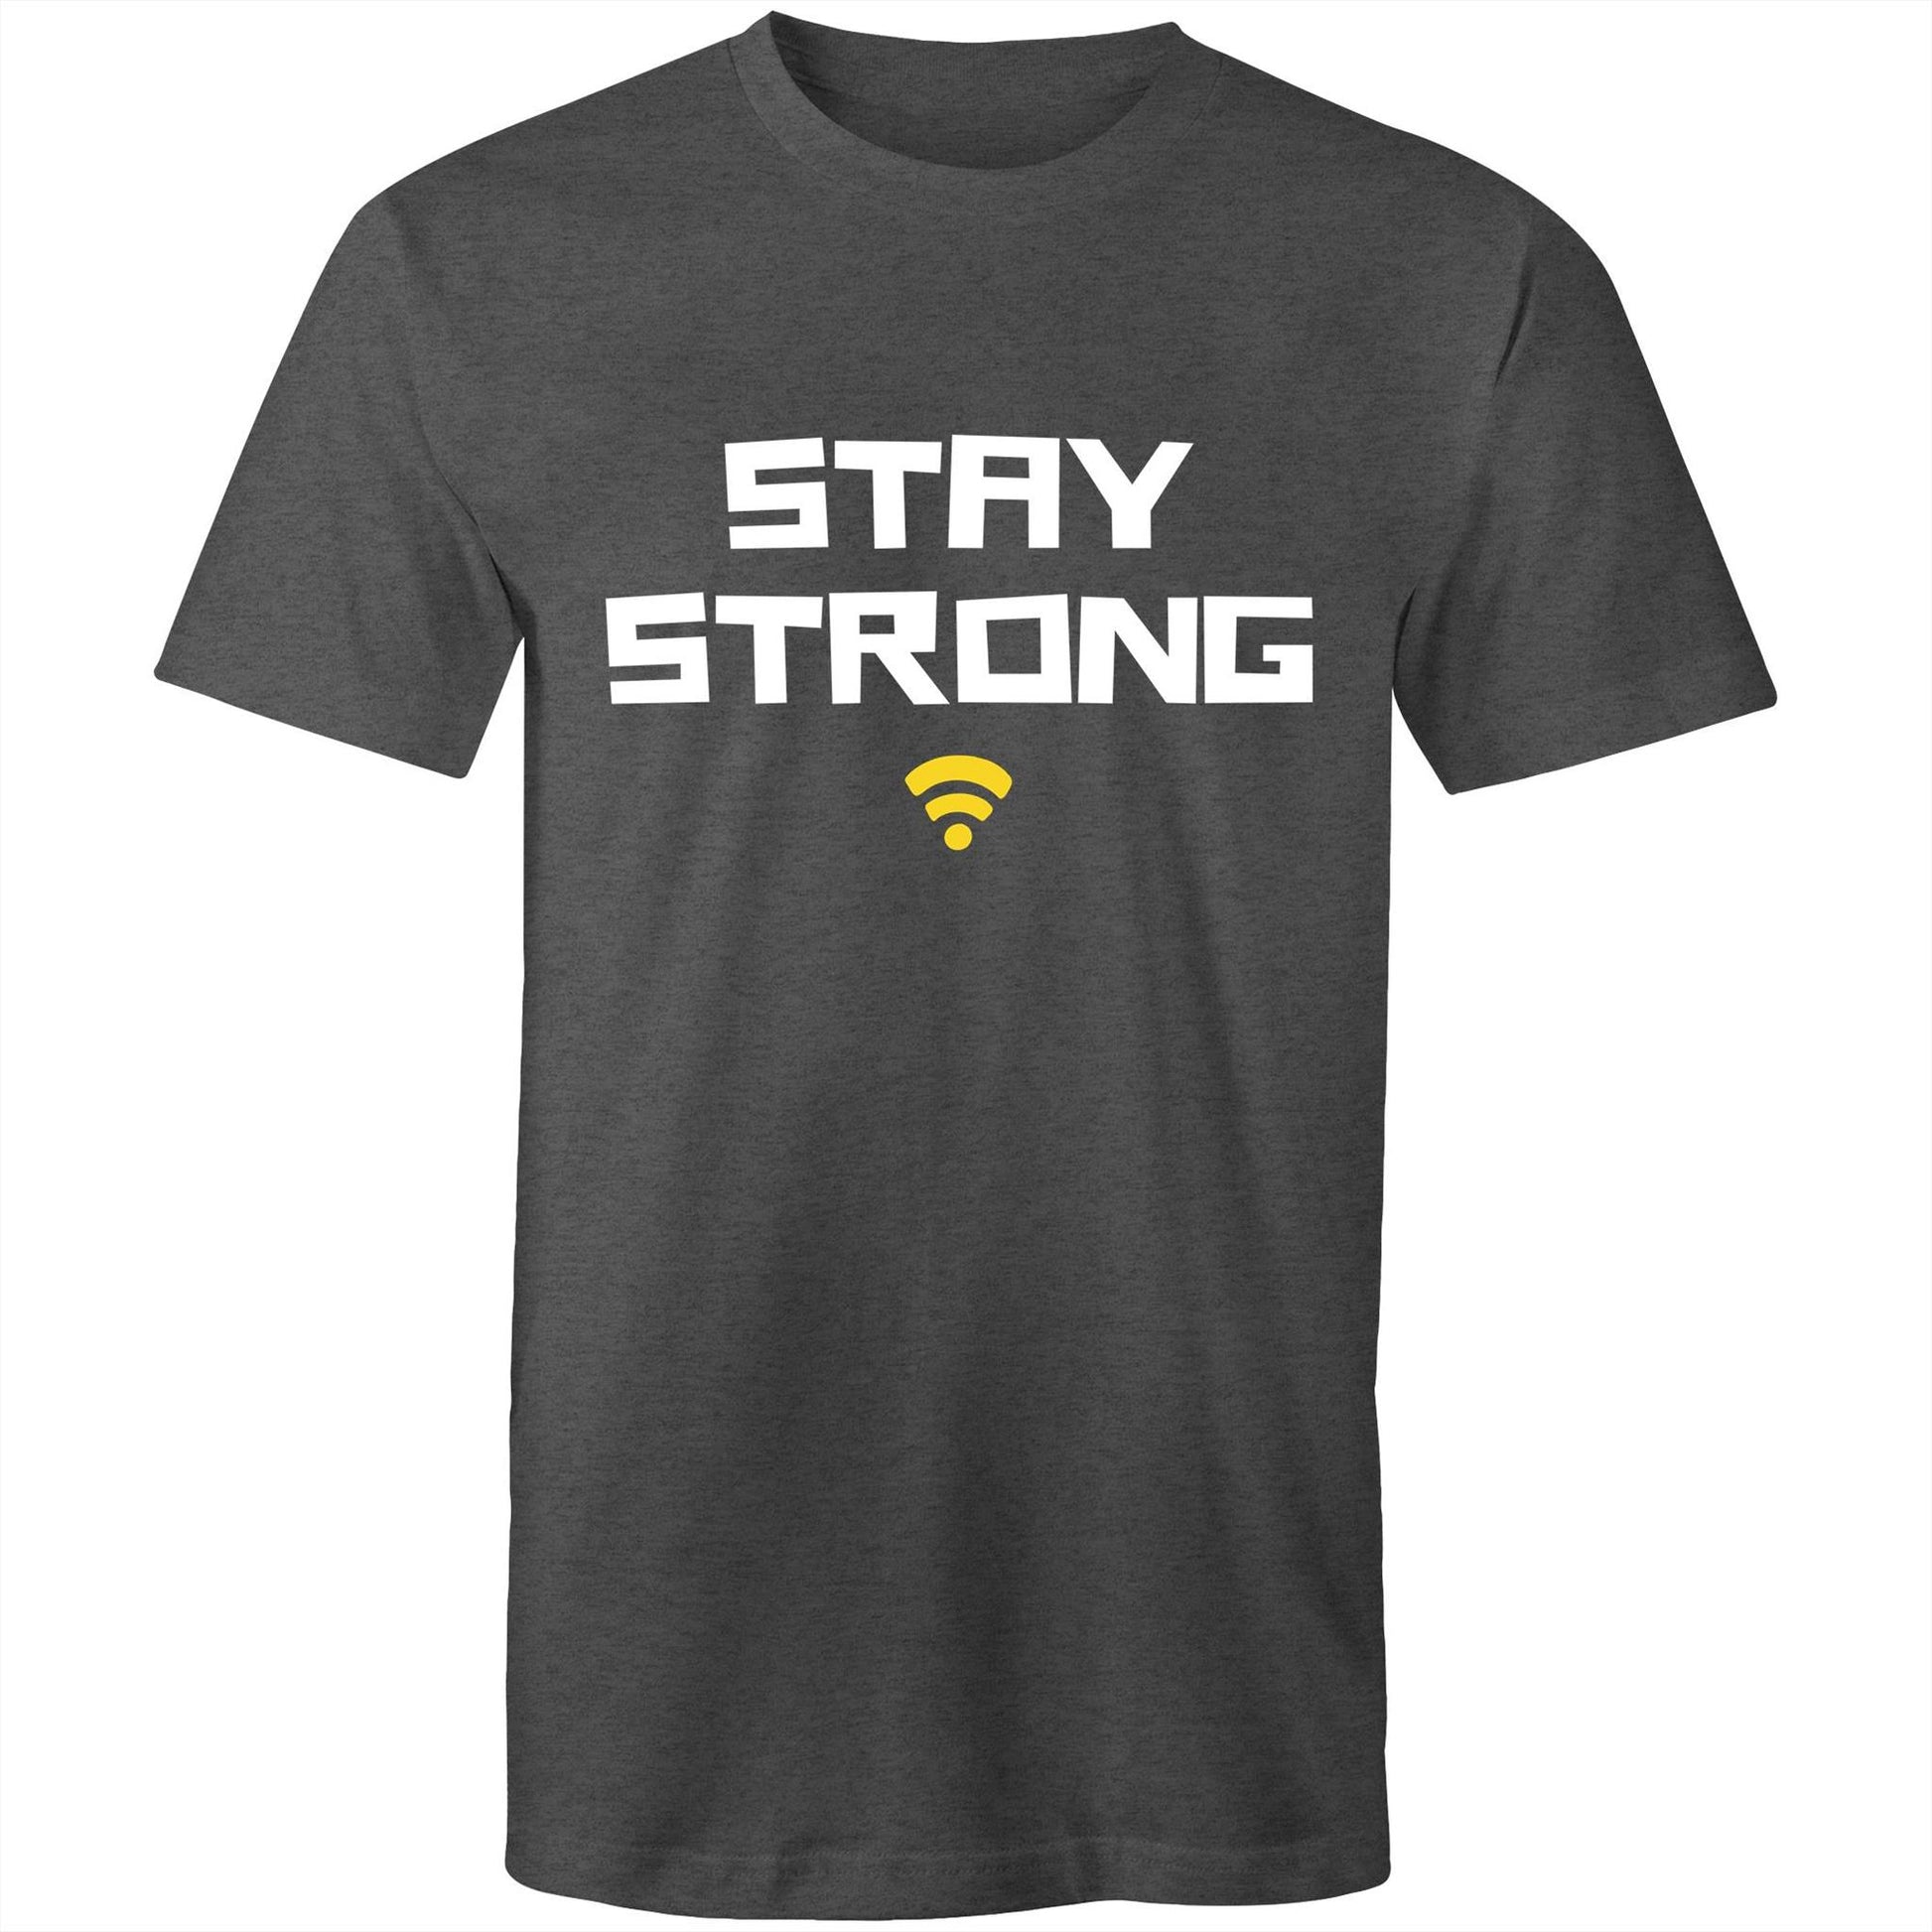 Stay Strong - Mens T-Shirt Asphalt Marle Mens T-shirt Motivation Tech